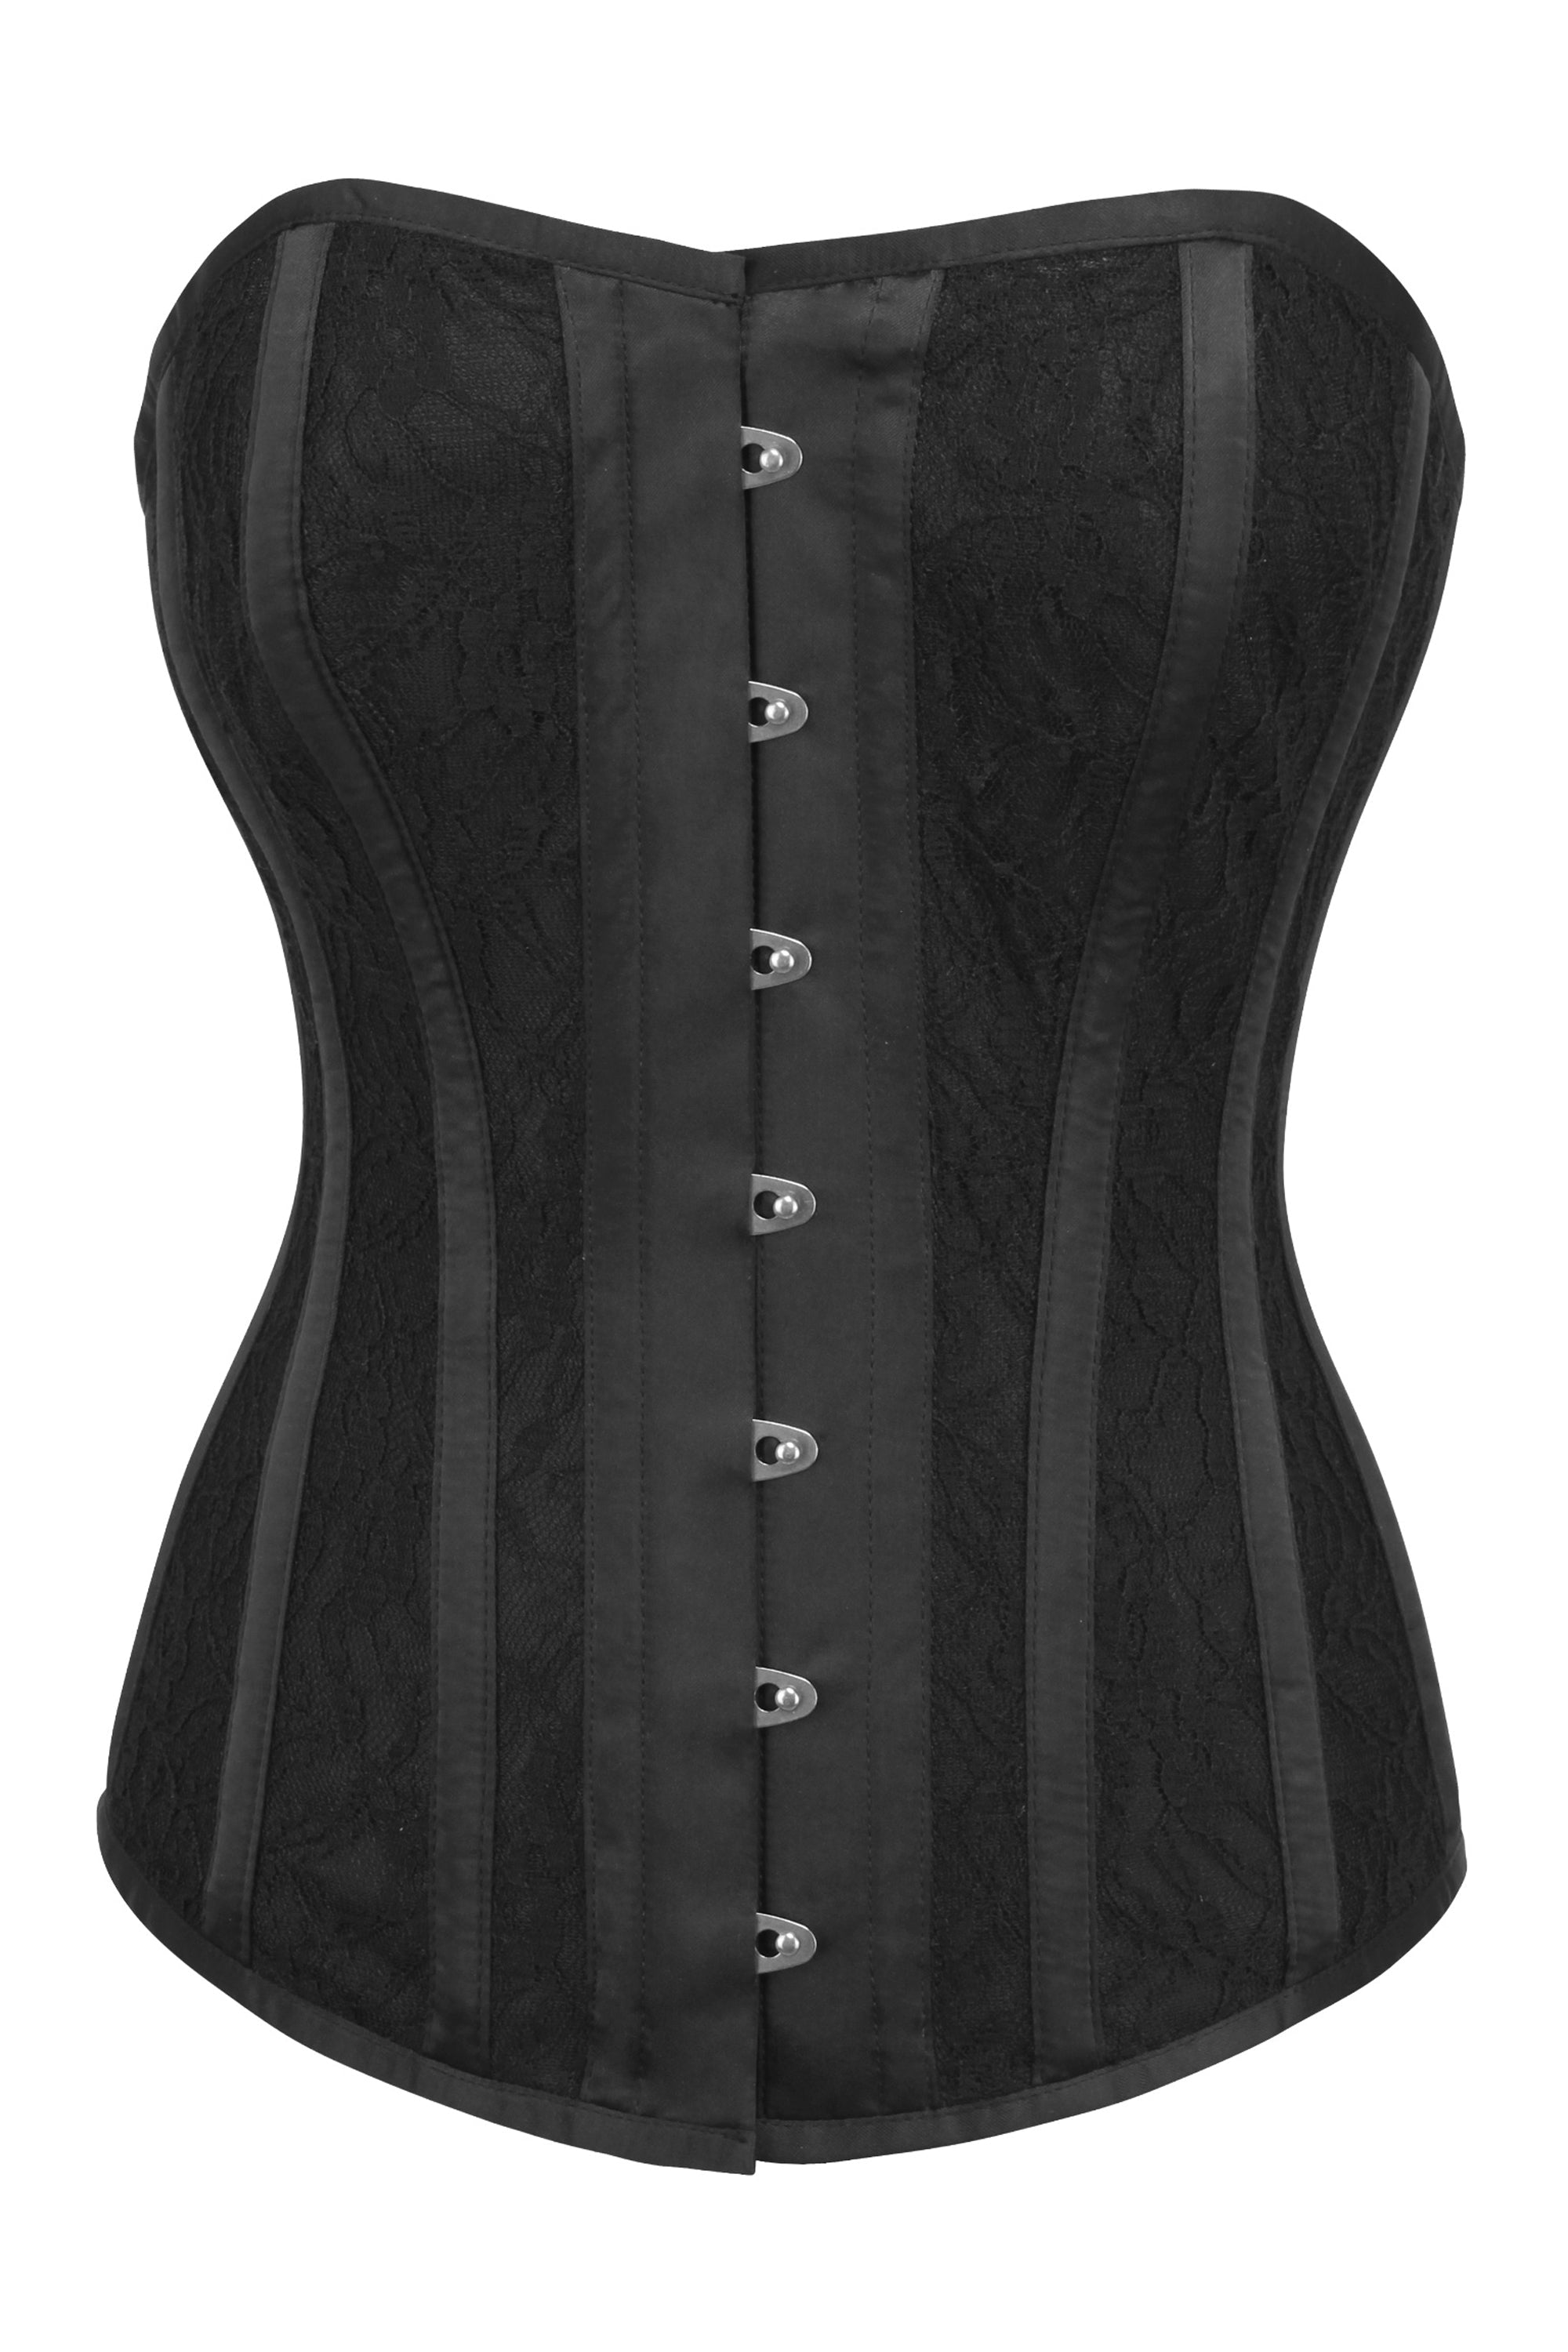 https://corset-story-ca.com/cdn/shop/products/BC-0091.jpg?v=1698834722